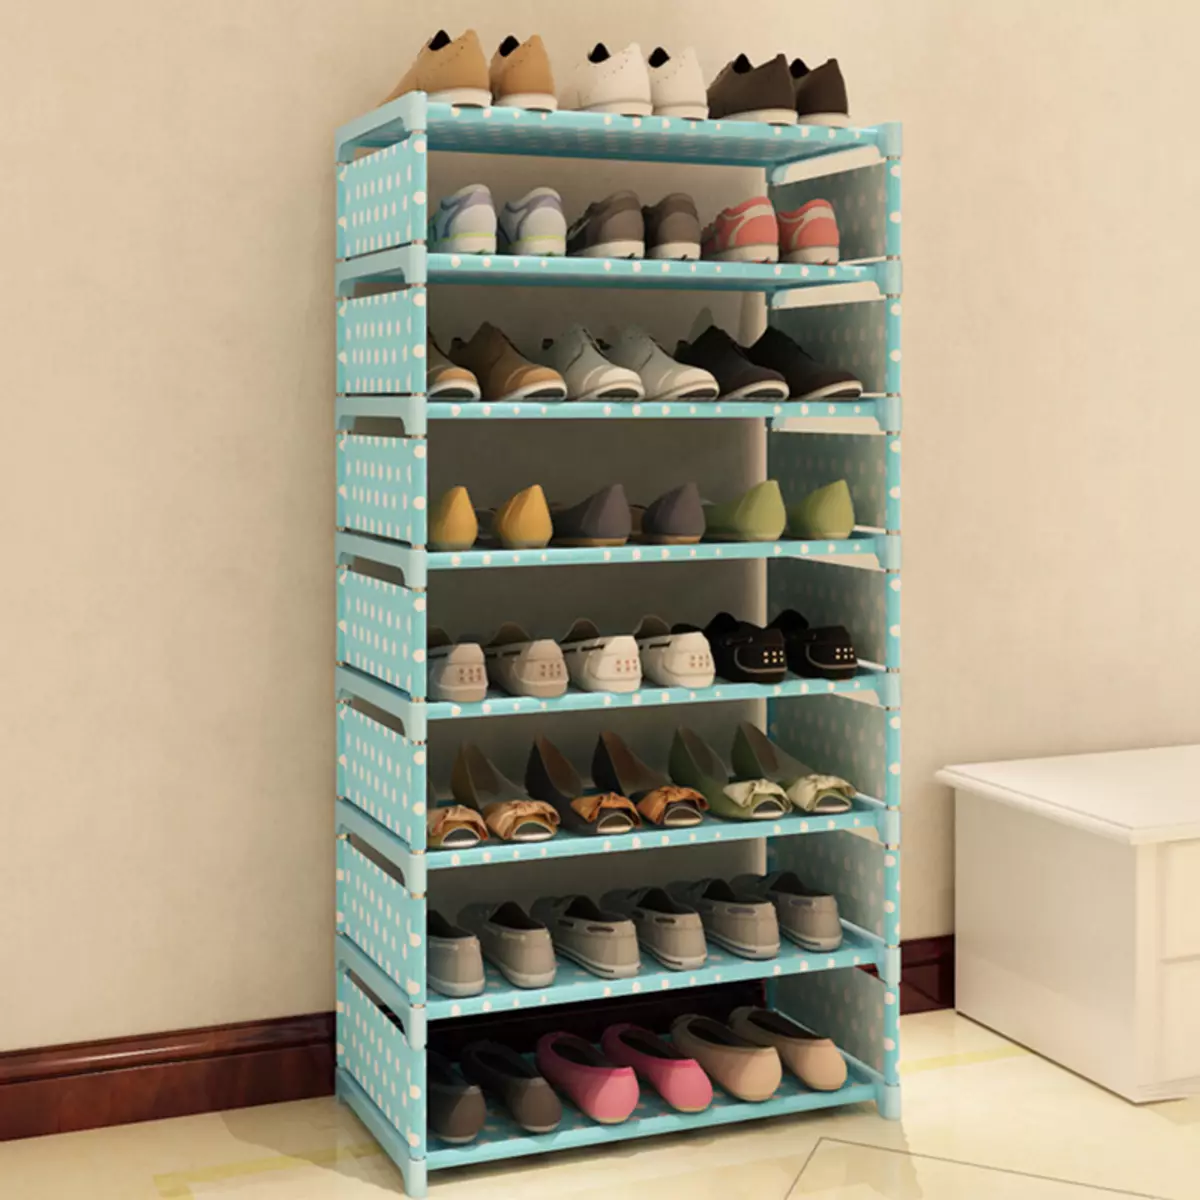 נעליים צרות במסדרון (83 תמונות): בחר ערדליים לנעליים עם עומק של 20 ס